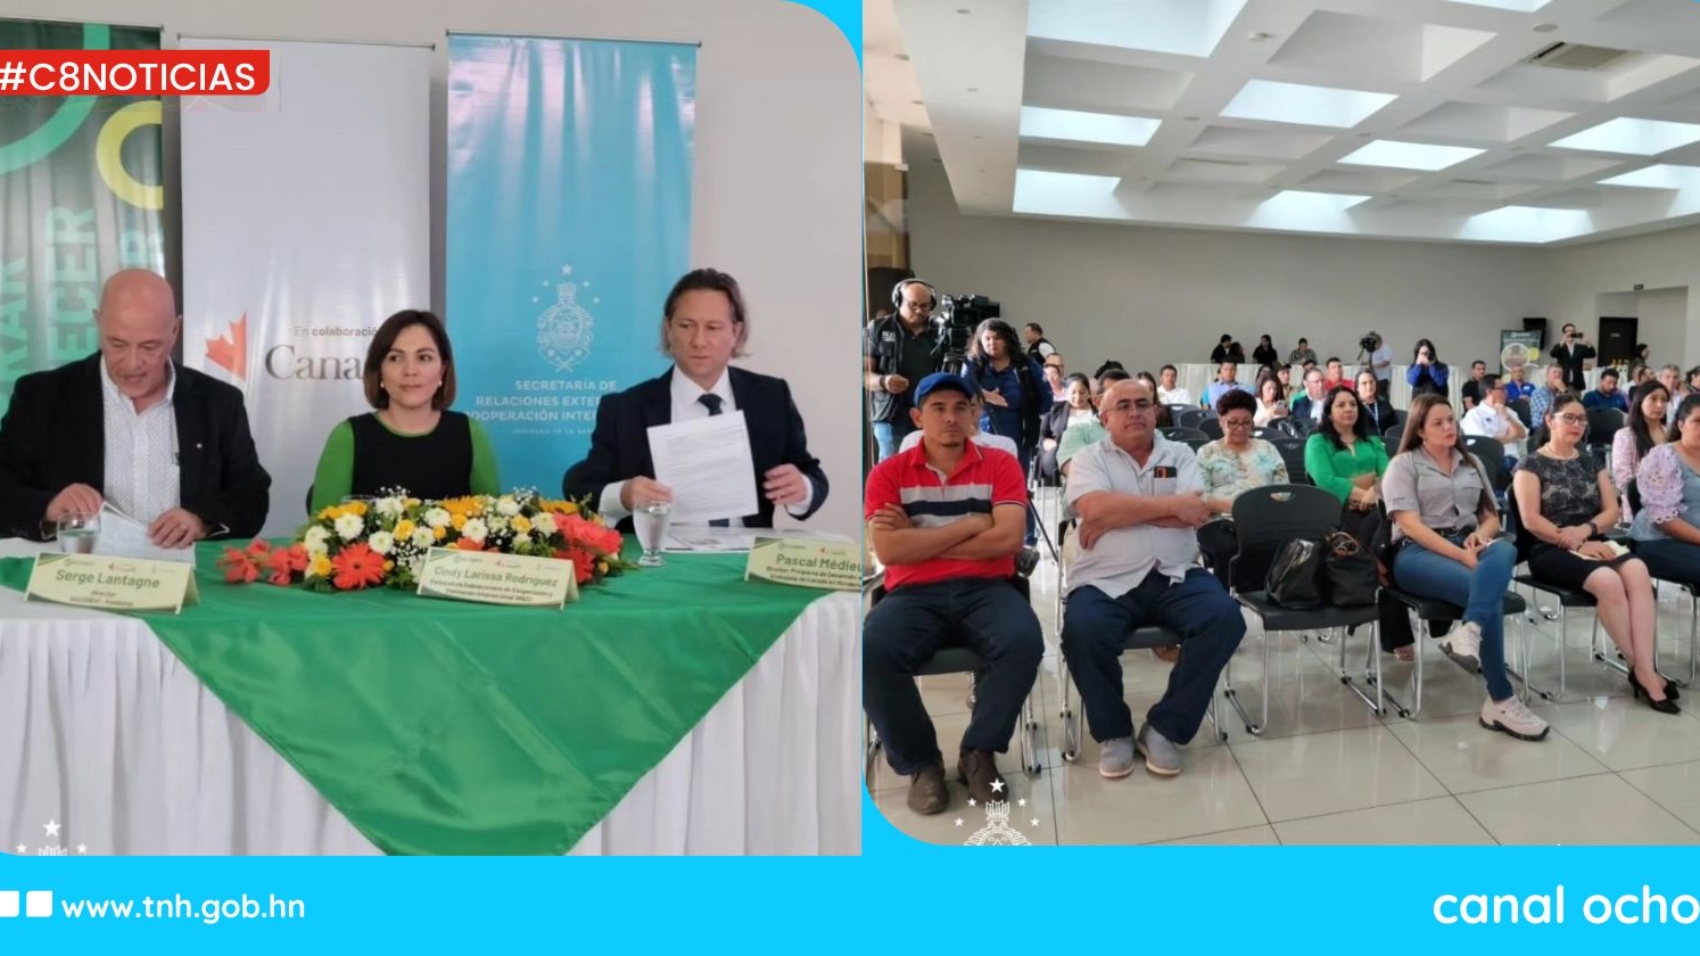 Cancillería junto con la embajada de Canadá lanzan proyecto “Sabores de Honduras”